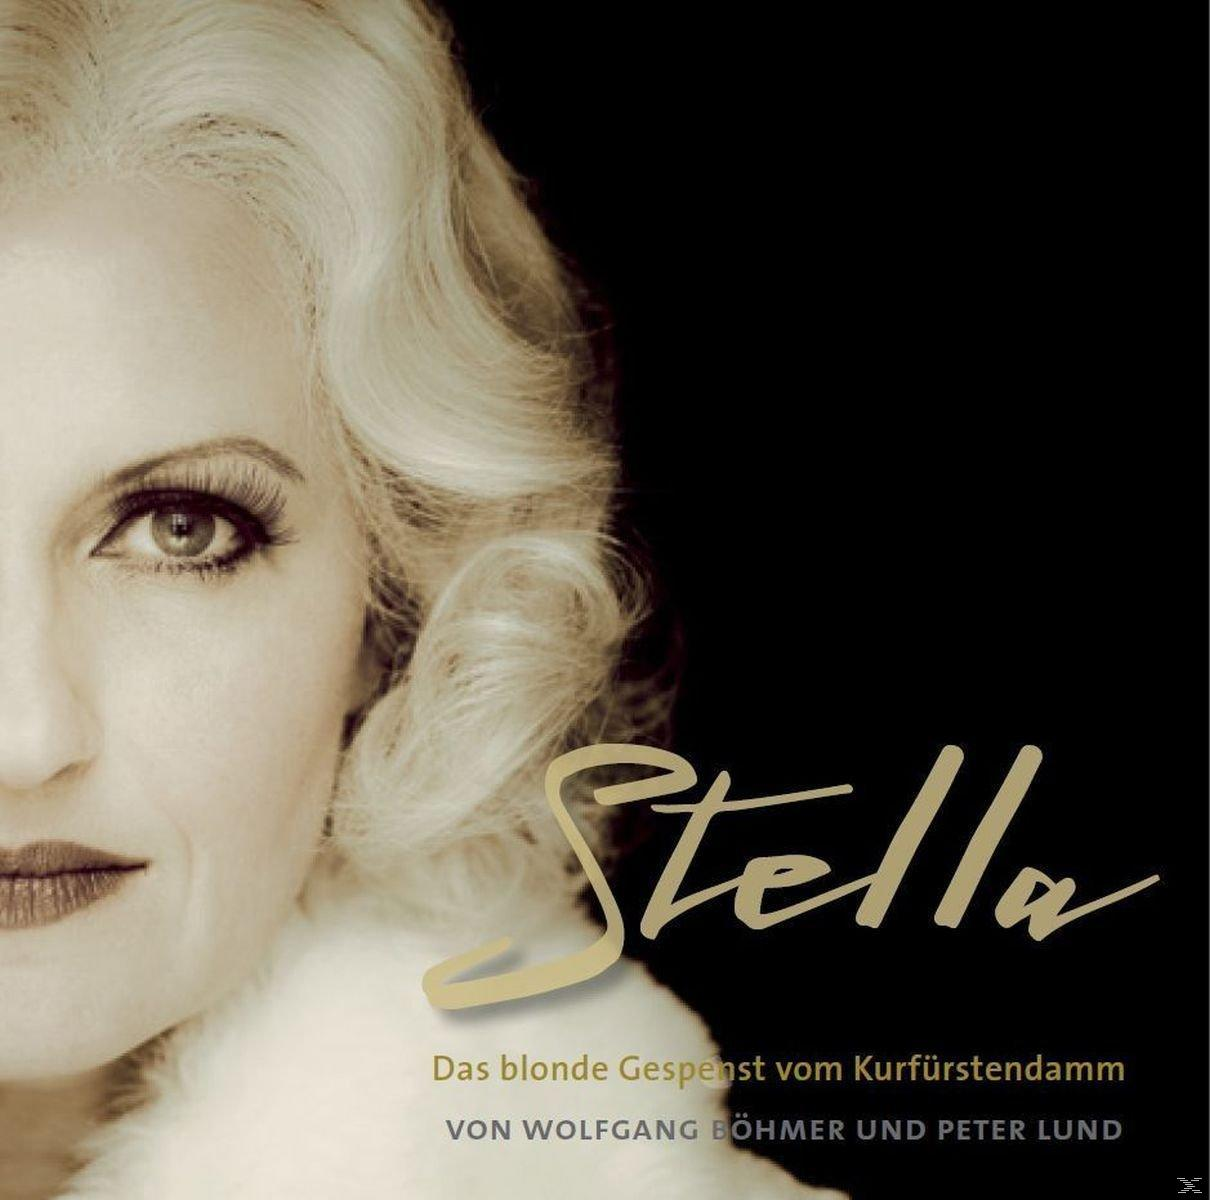 vom Stella Gespenst - - blonde VARIOUS Kurfürstendamm - Das (CD)